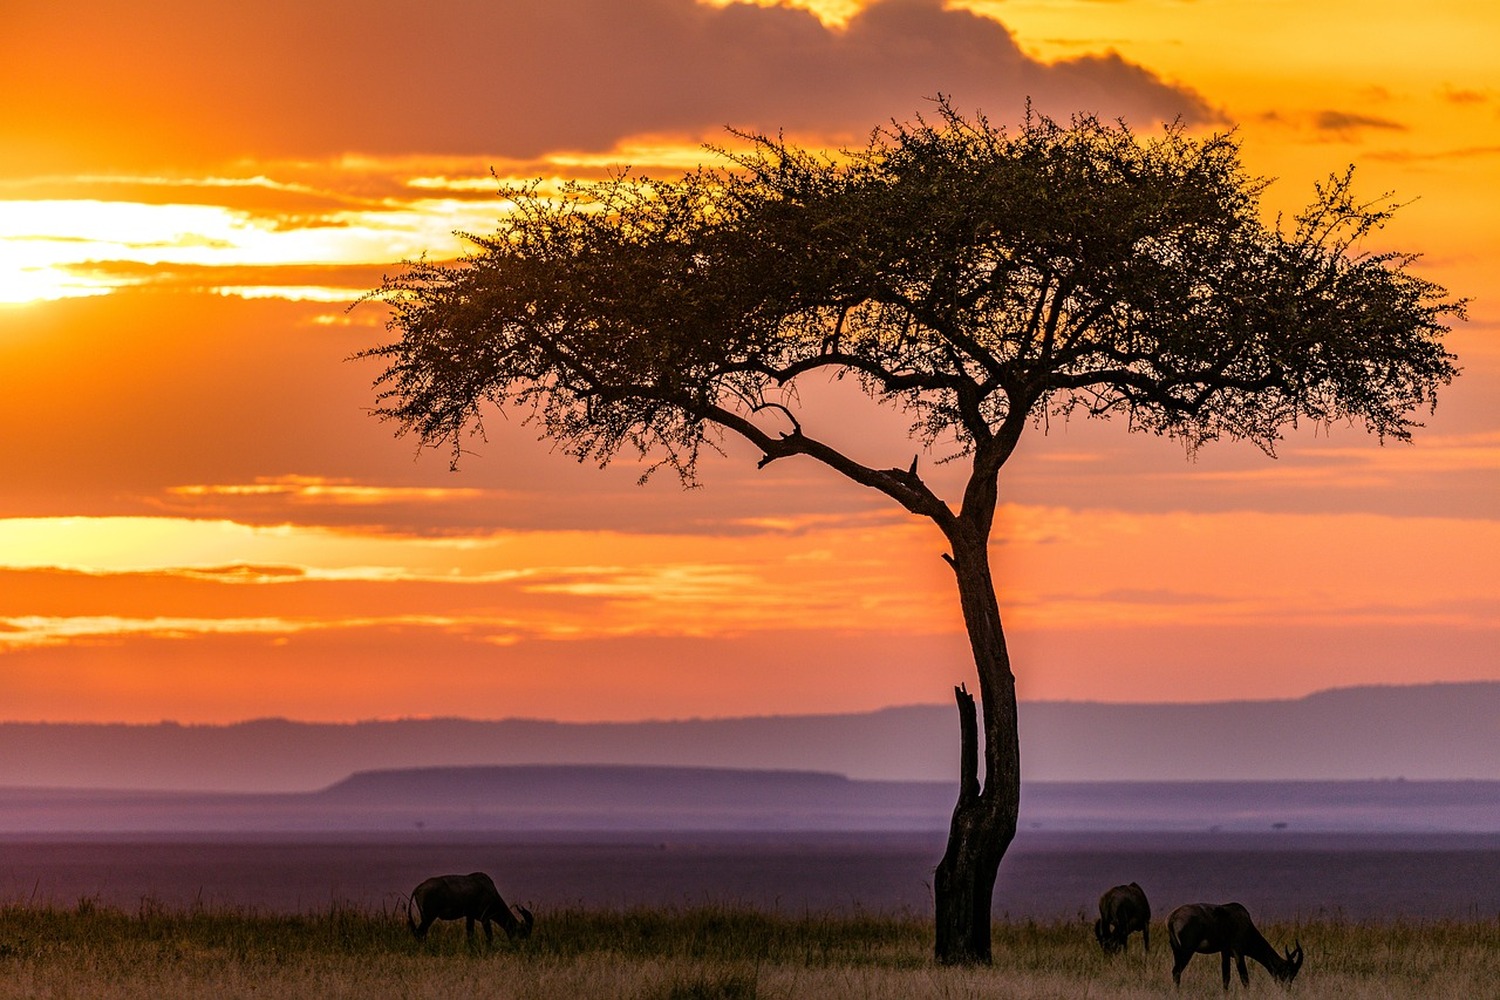 『野生の王国』マサイマラ自然保護区は人生を変えるほどの大きな感動があるかもしれません！